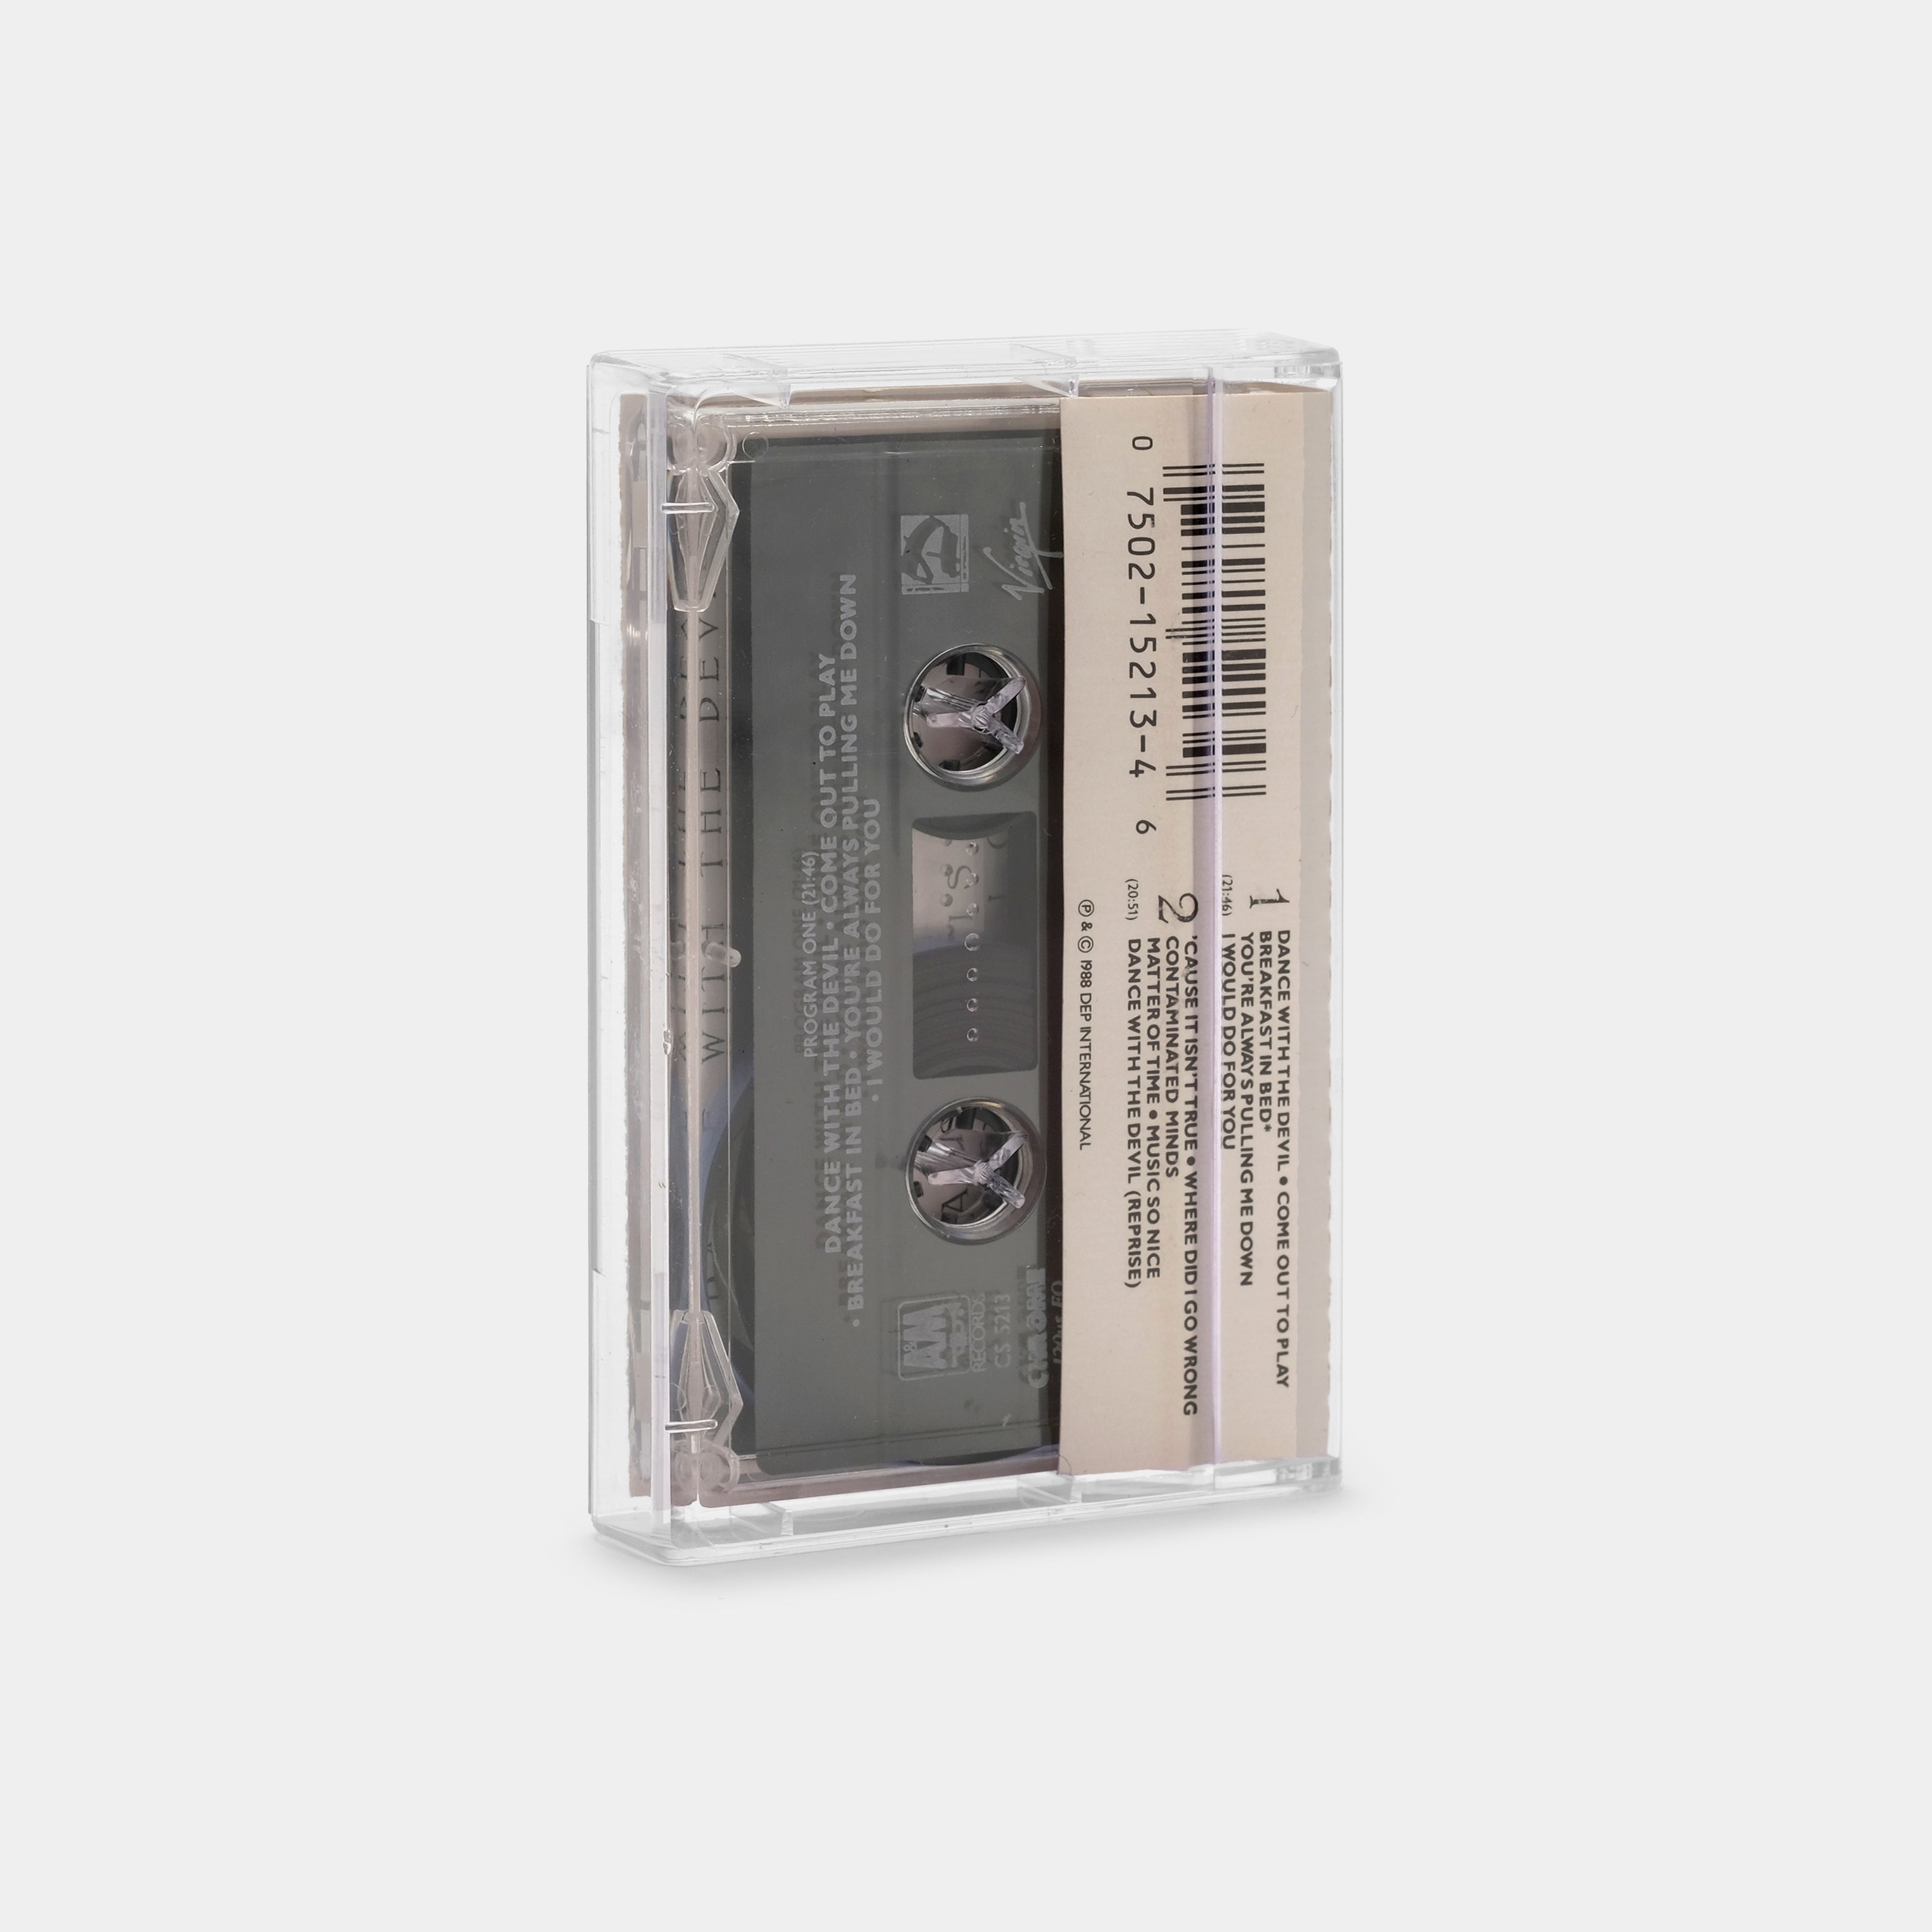 UB40 - UB40 Cassette Tape